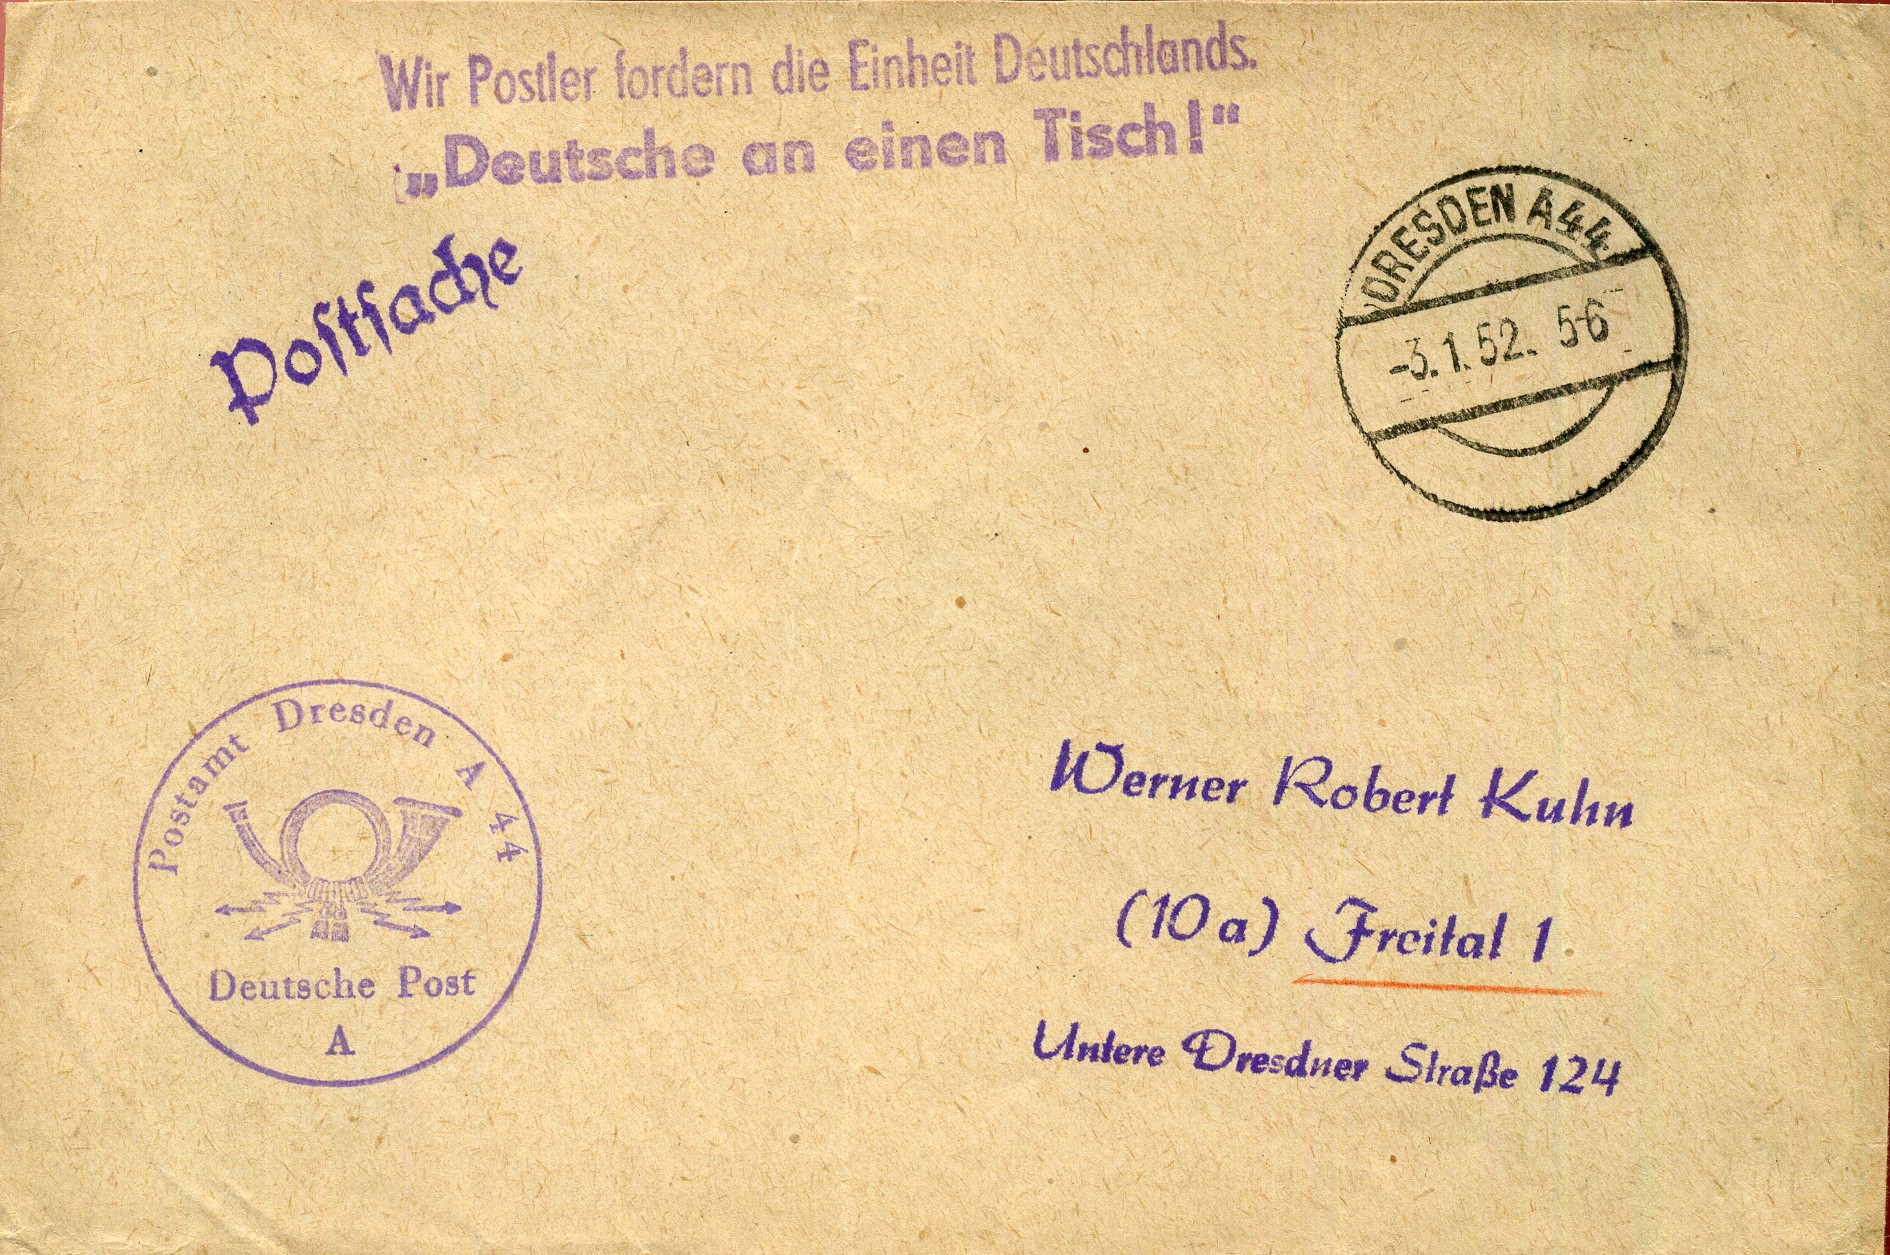 Wir Postler fordern die Einheit Deutschlands - Deutsche an einen Tisch! - Handstempel - violett - Dresden A 44